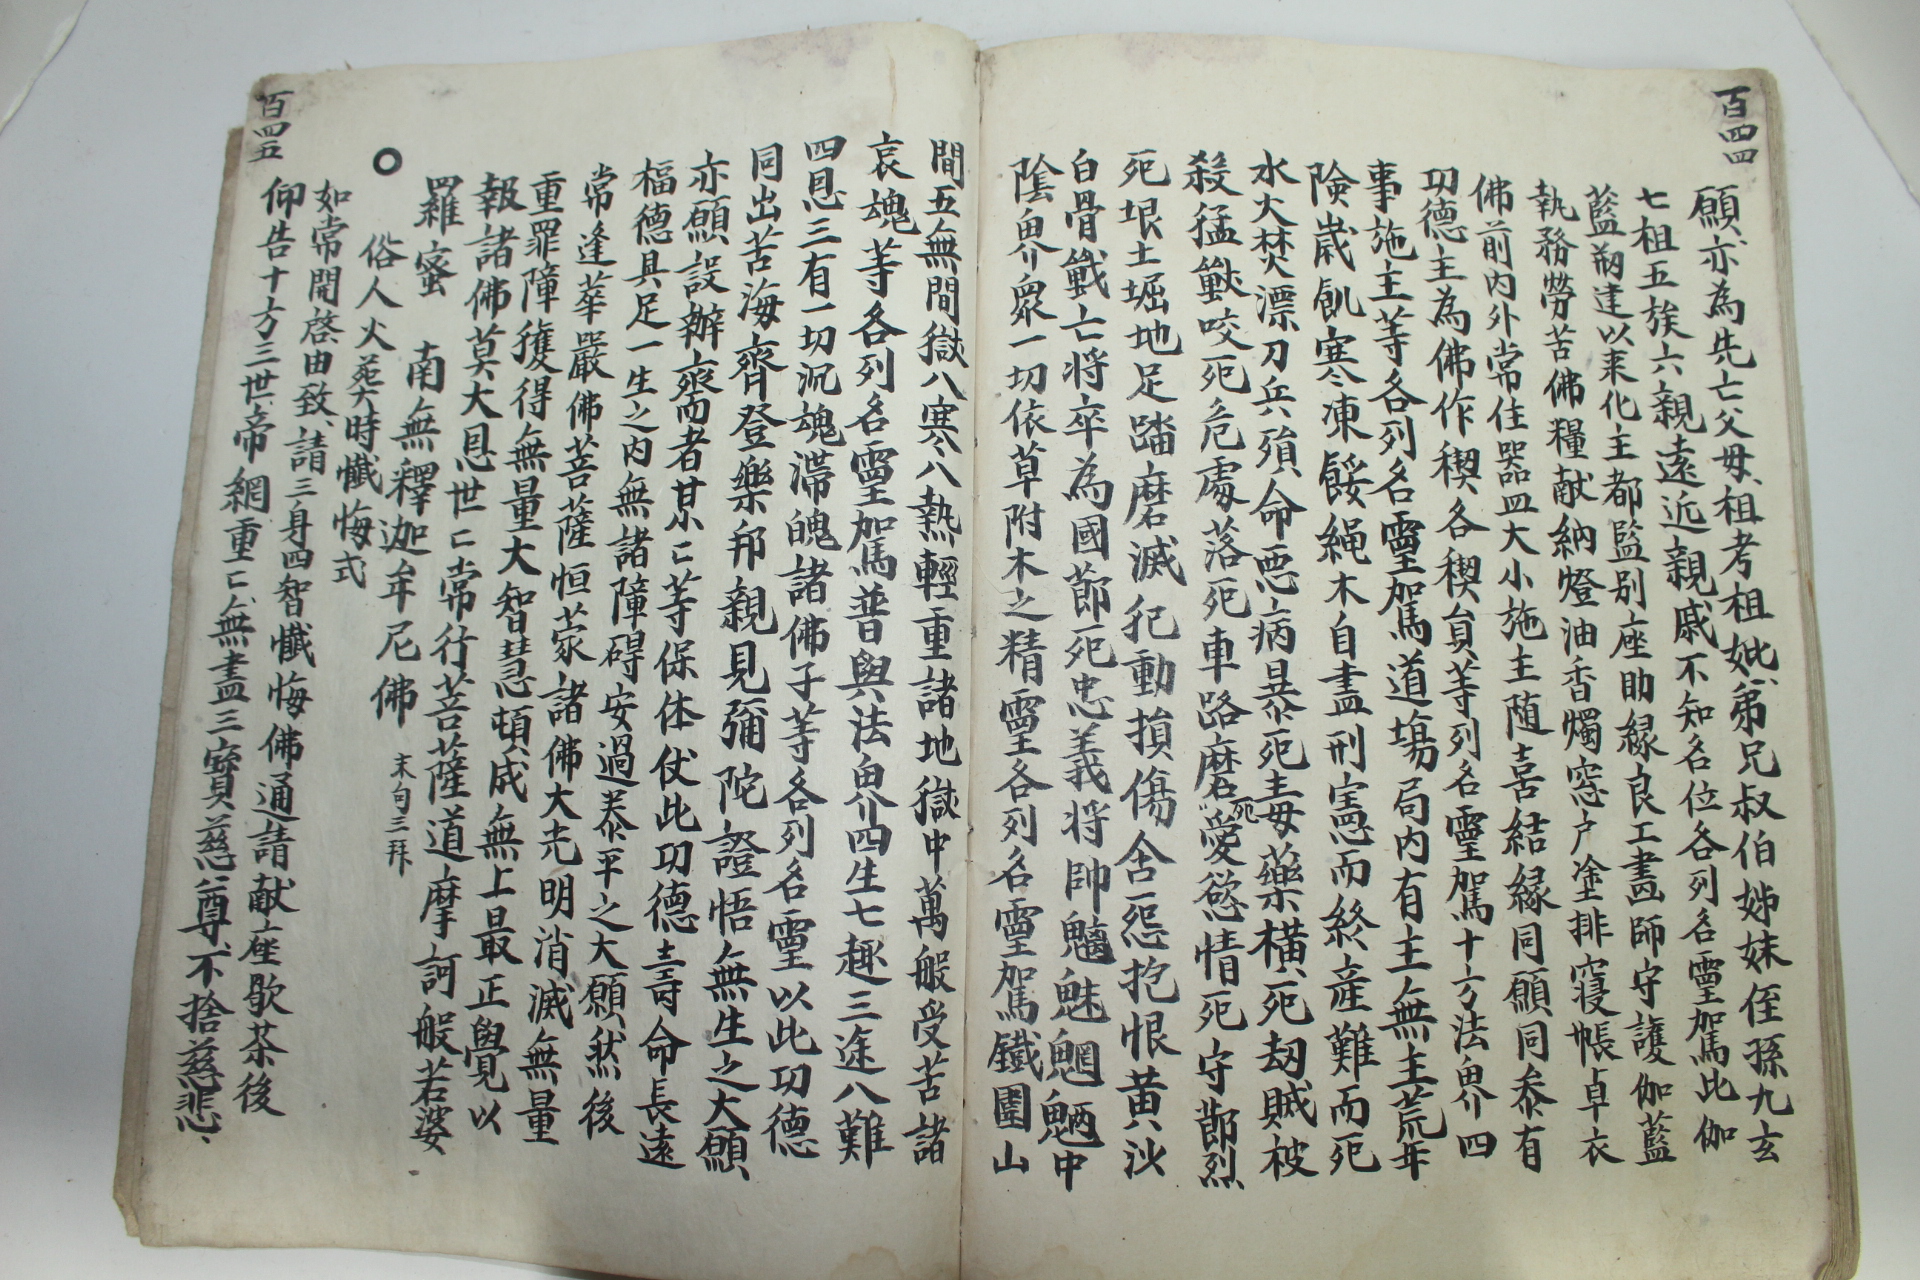 조선시대 필사본 각종불경이 수록된 국한문혼용 팔양경(八陽經) 1책완질